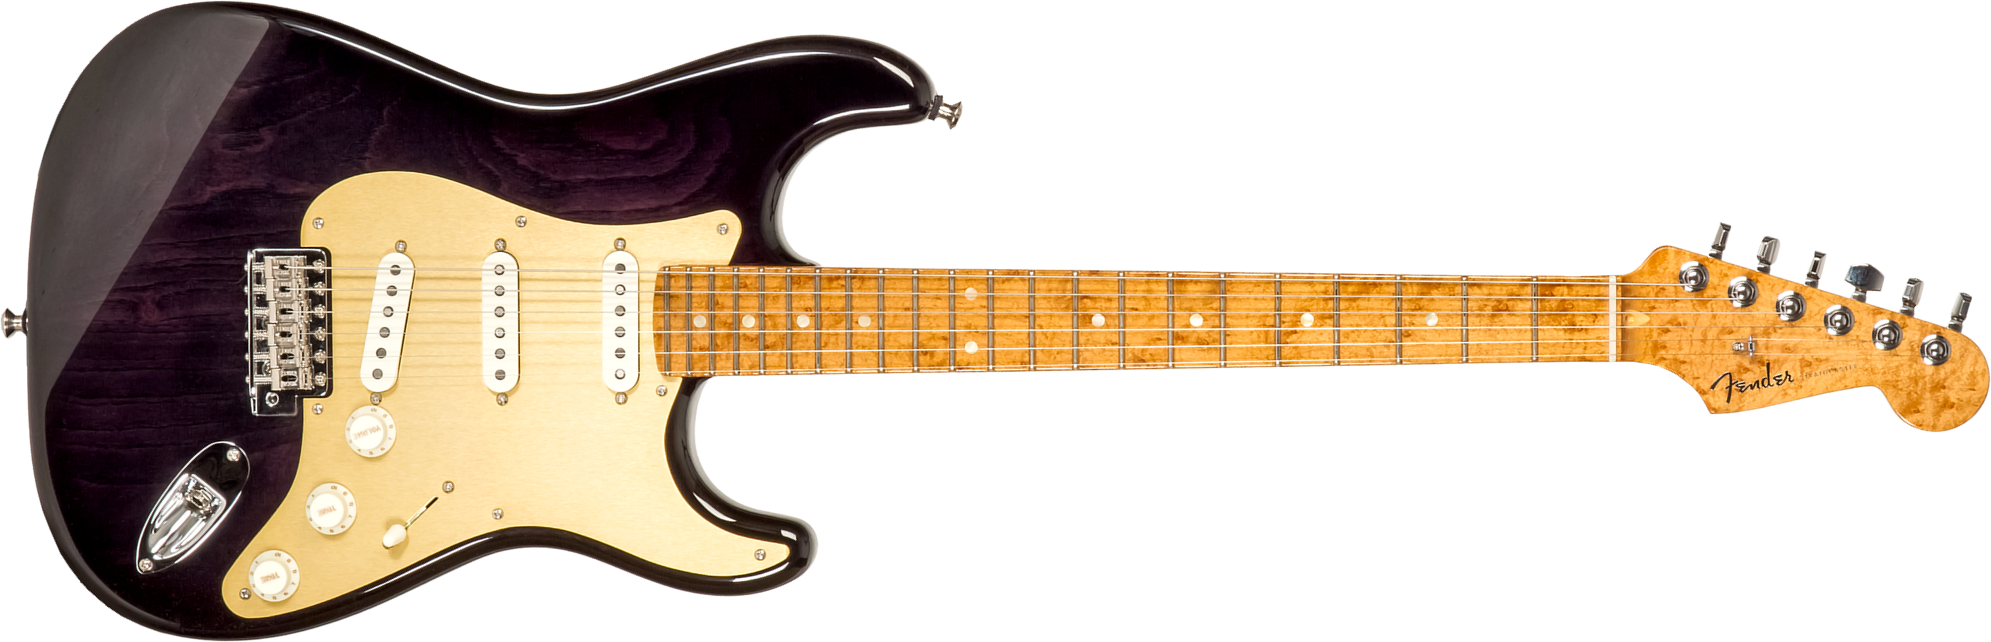 Fender Custom Shop Strat American Custom 3s Trem Mn #xn15899 - Nos Ebony Transparent - Guitare Électrique Forme Str - Main picture